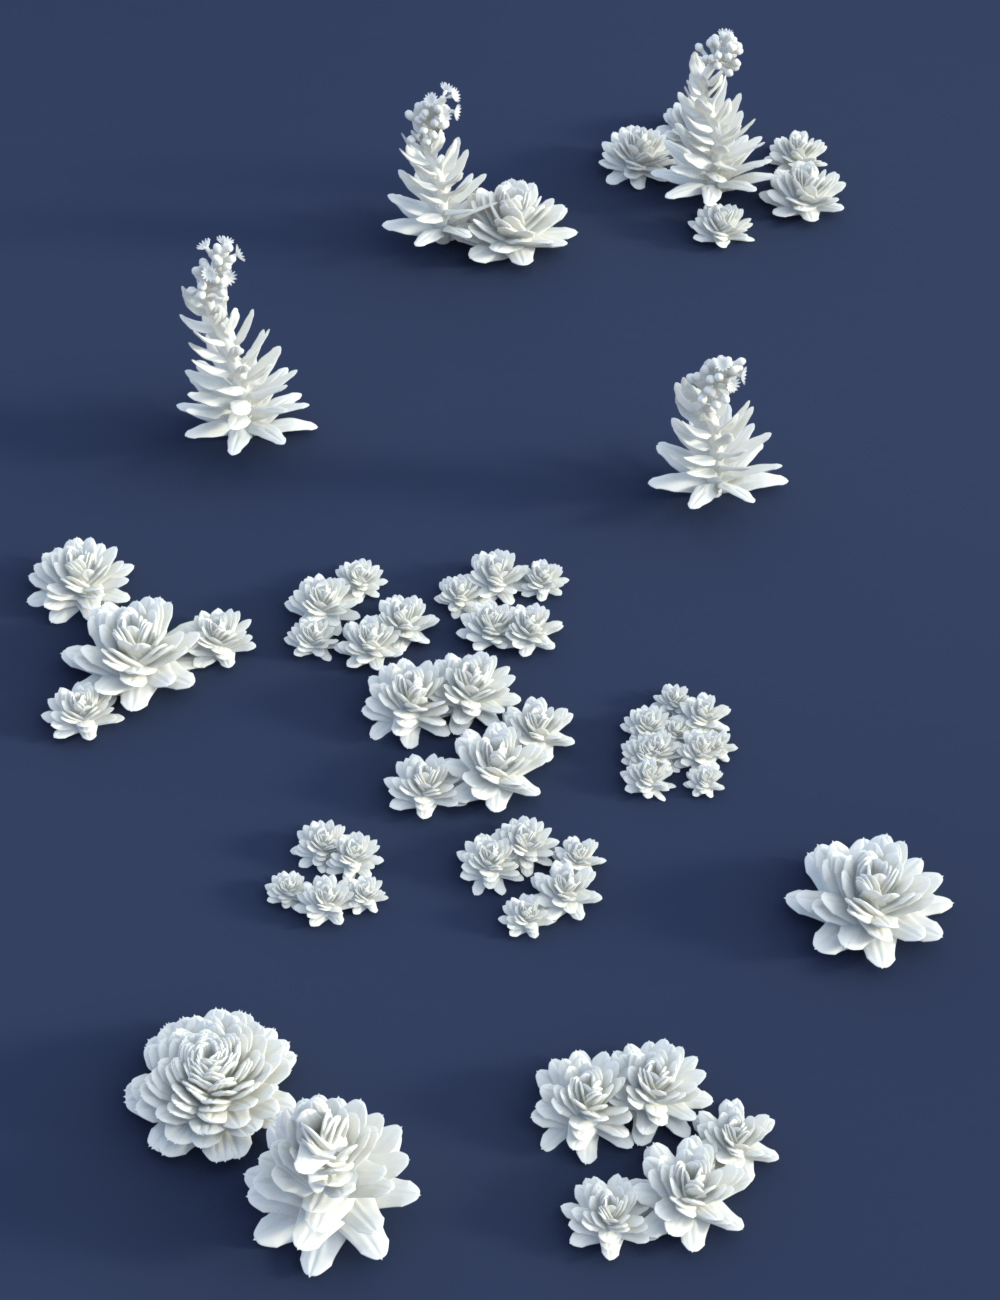 Tiny Plants - House Leeks by: MartinJFrost, 3D Models by Daz 3D